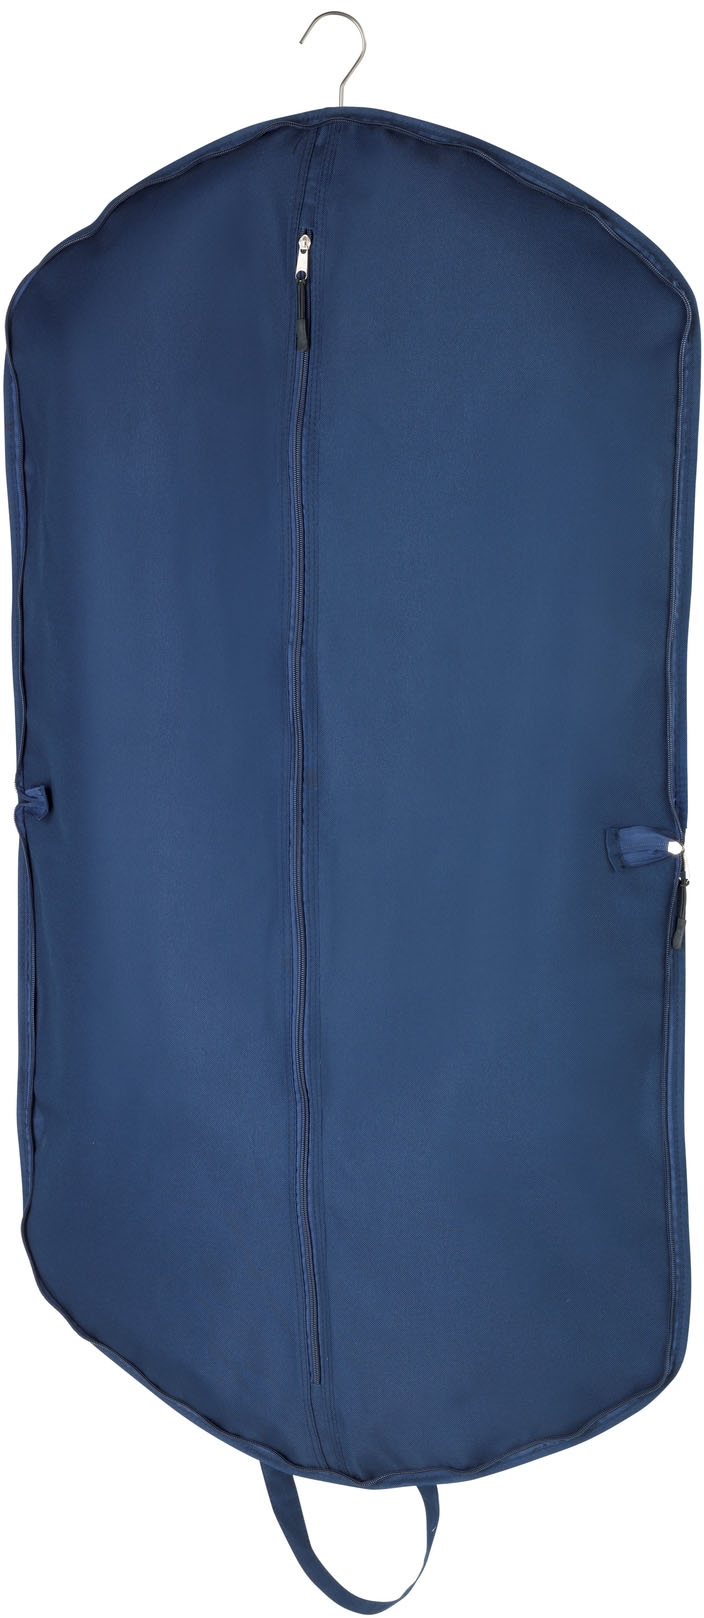 WENKO Kleidersack »Business Premium«, mit Universaltasche, 112 x 62 cm, Tasche: 40 x 30 cm